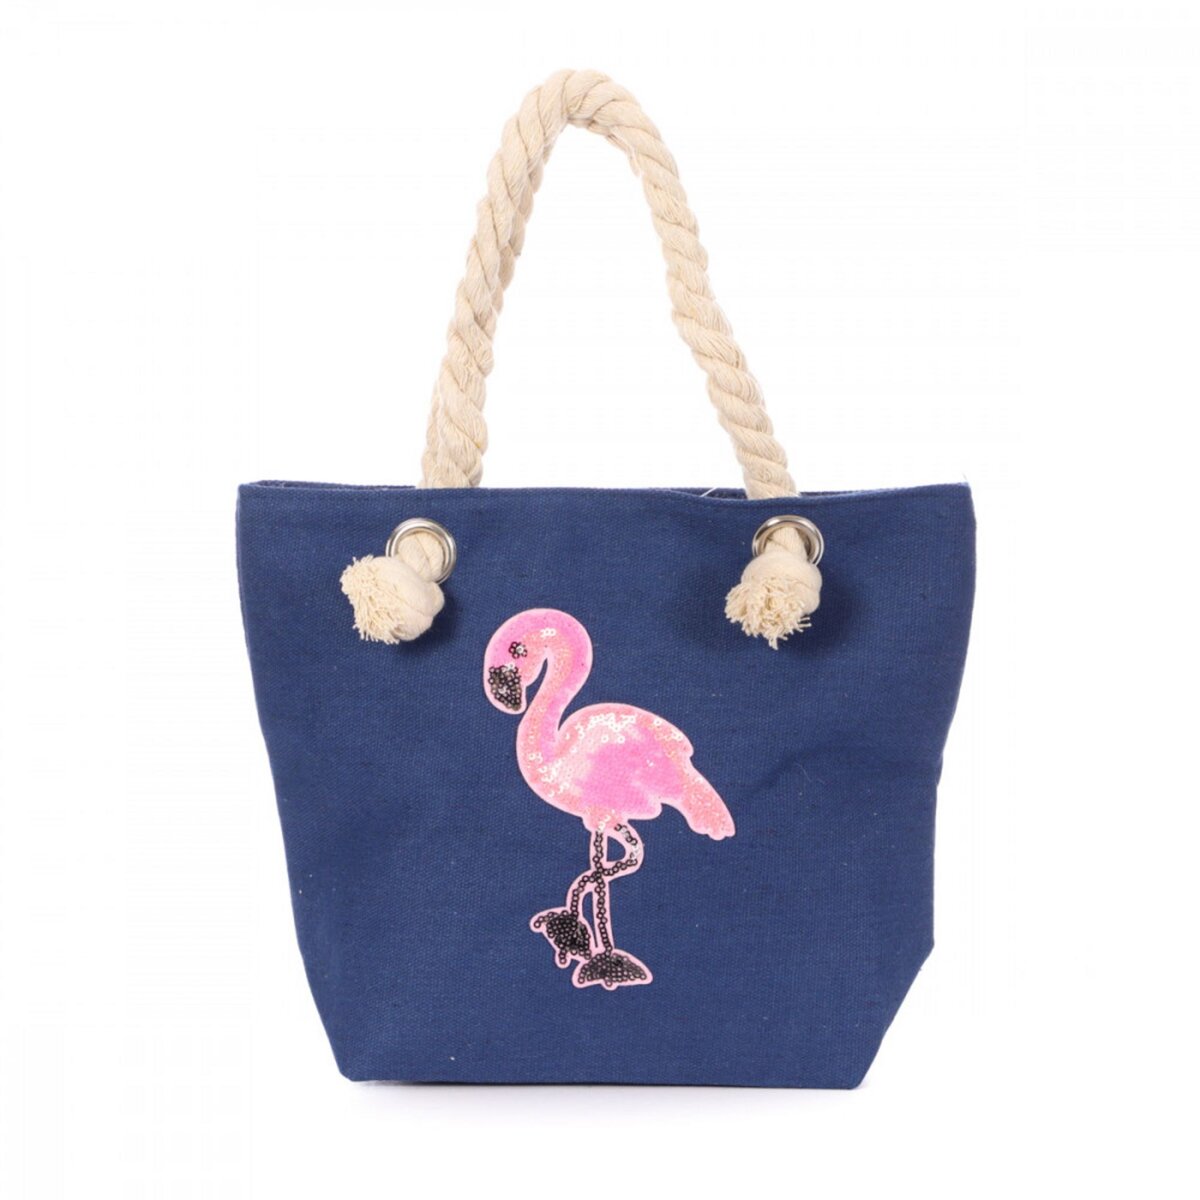  Mini sac de plage Bleu/Flamant Rose Enfant